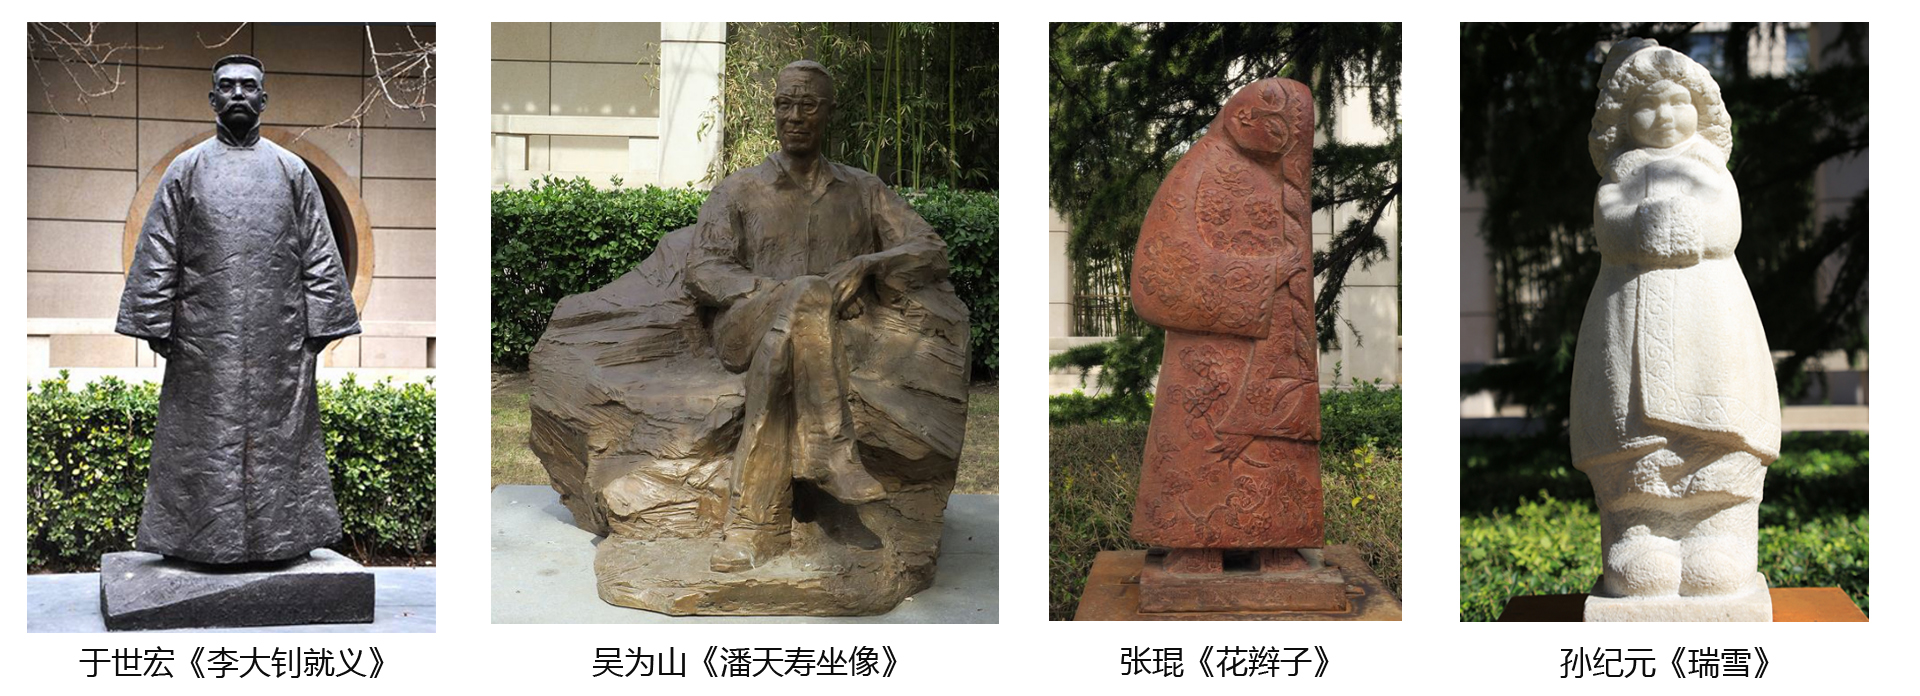 中国美术馆雕塑园内近代名人雕塑《鲁迅坐像》《李大钊雕塑》《朱自清雕塑》《陶行知雕像》等